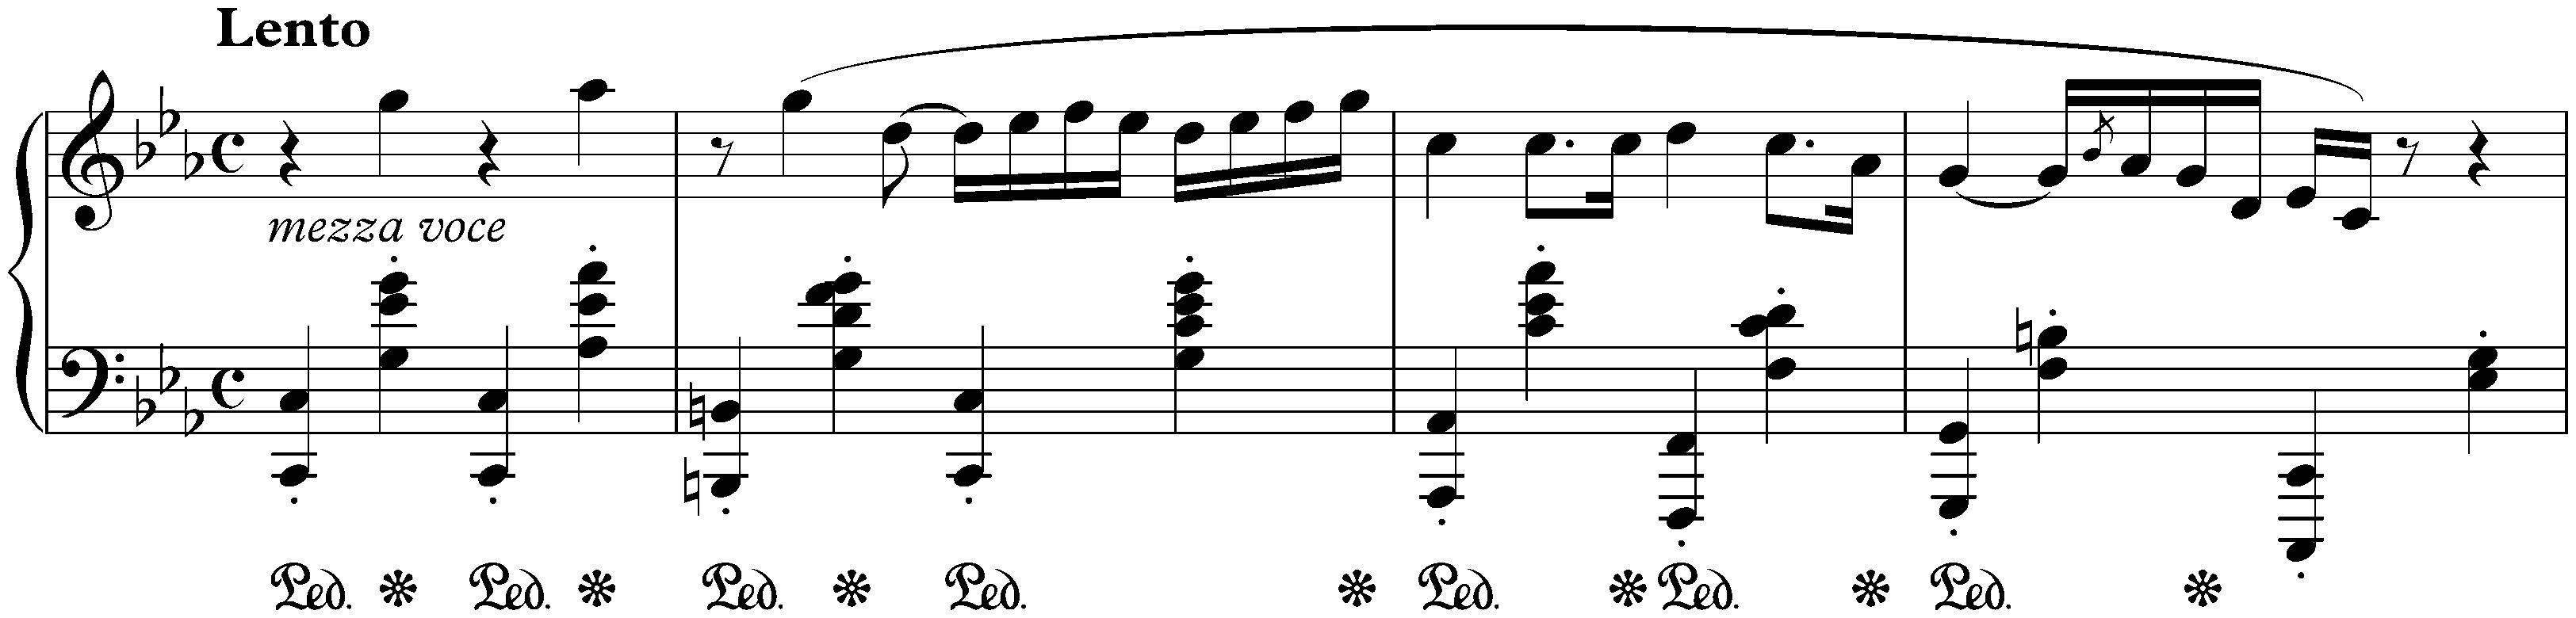 Two Nocturnes, op. 48; 1. C minor